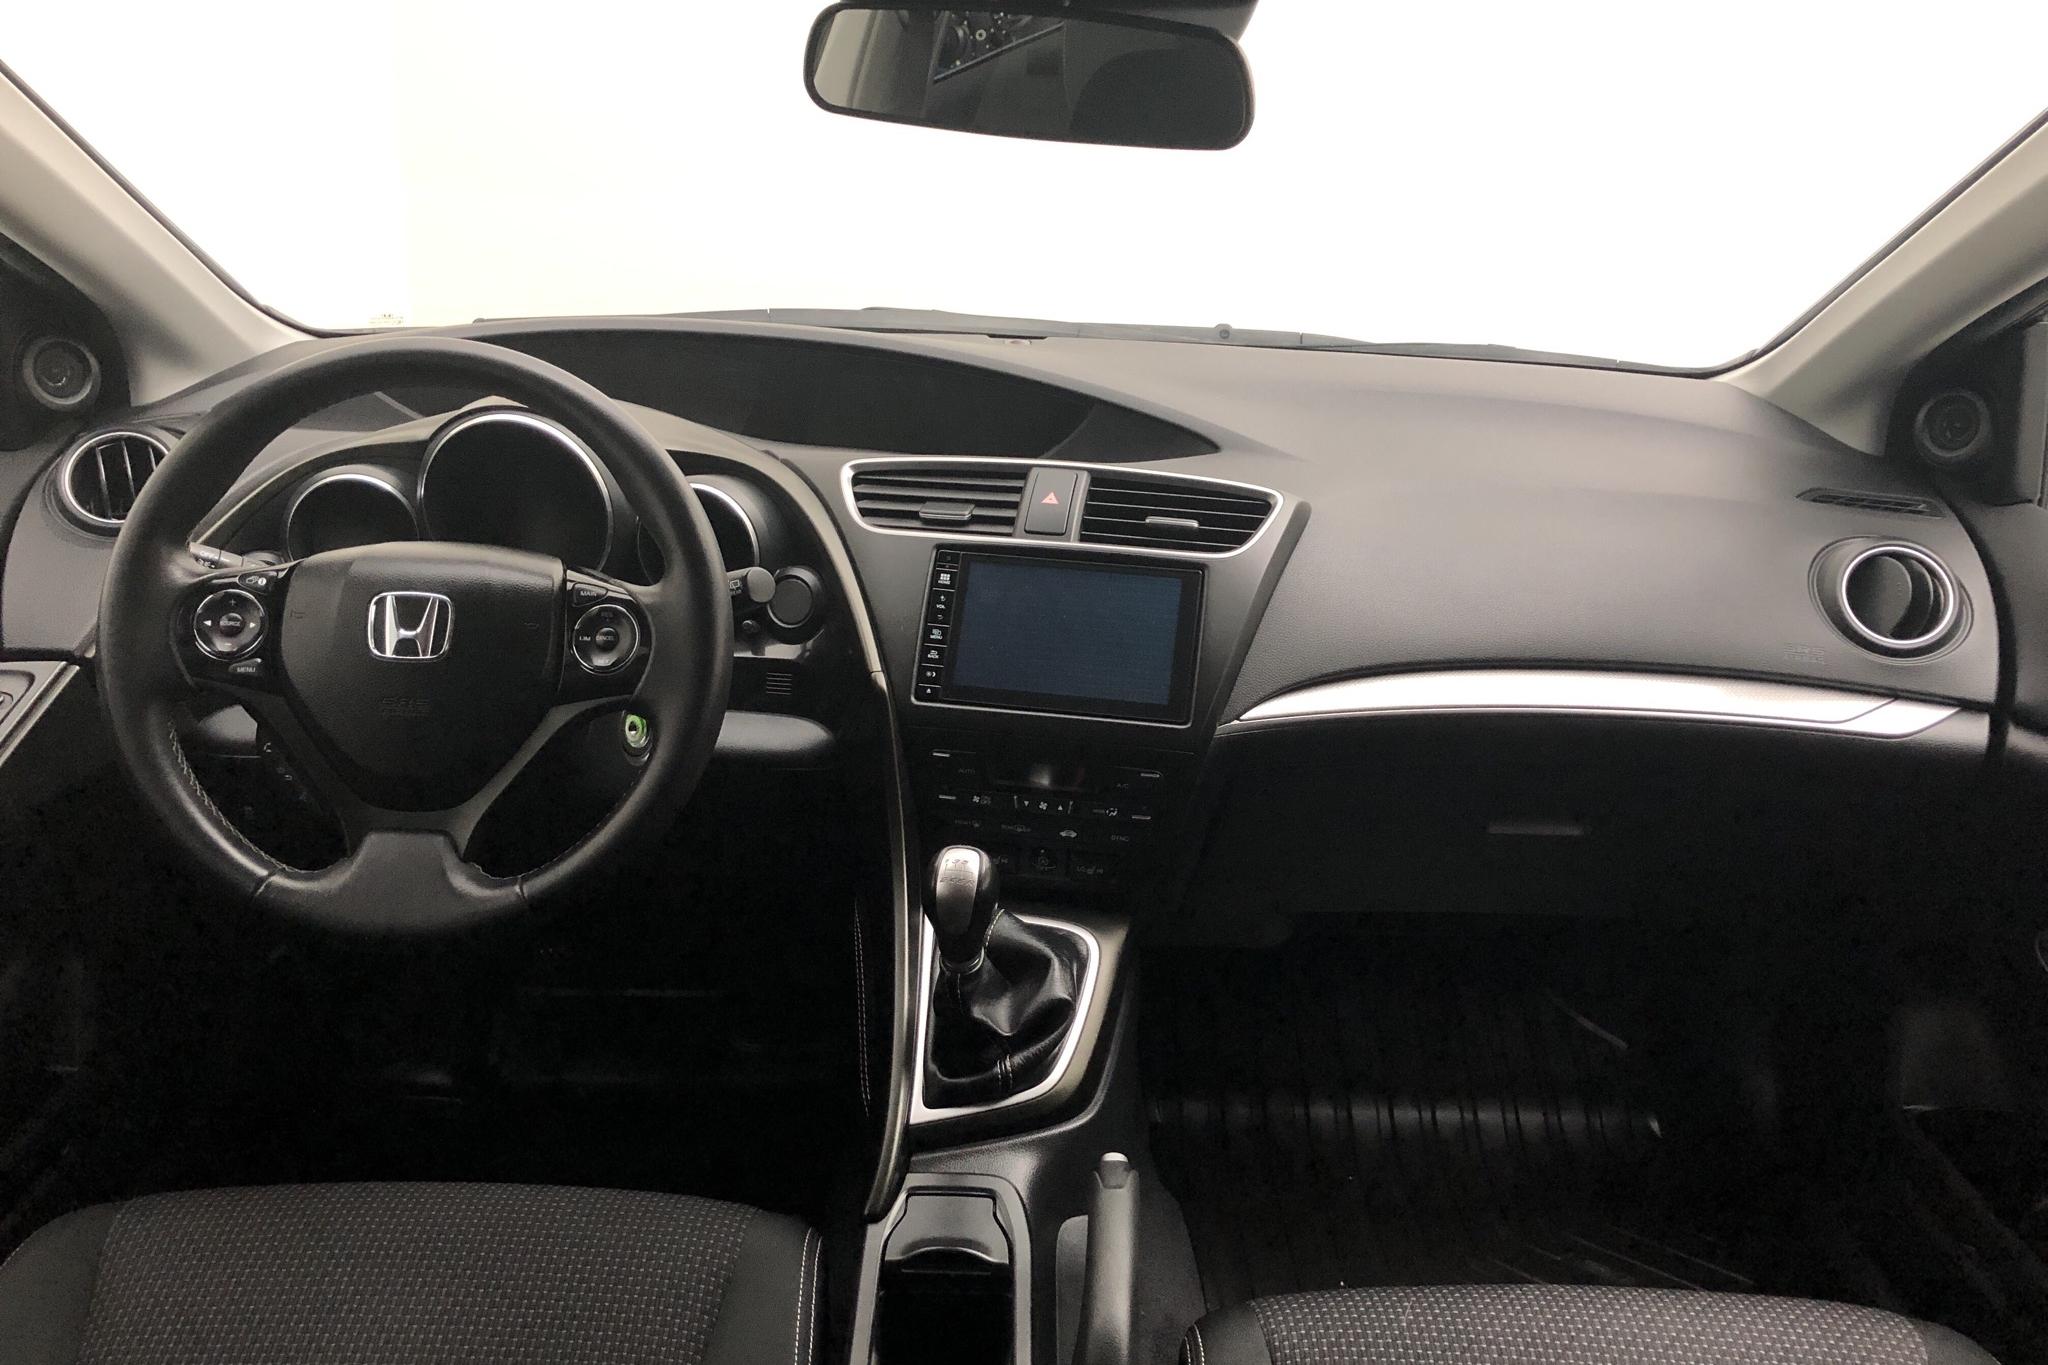 Honda Civic 1.6 i-DTEC Tourer (120hk) - 78 080 km - Manual - black - 2016